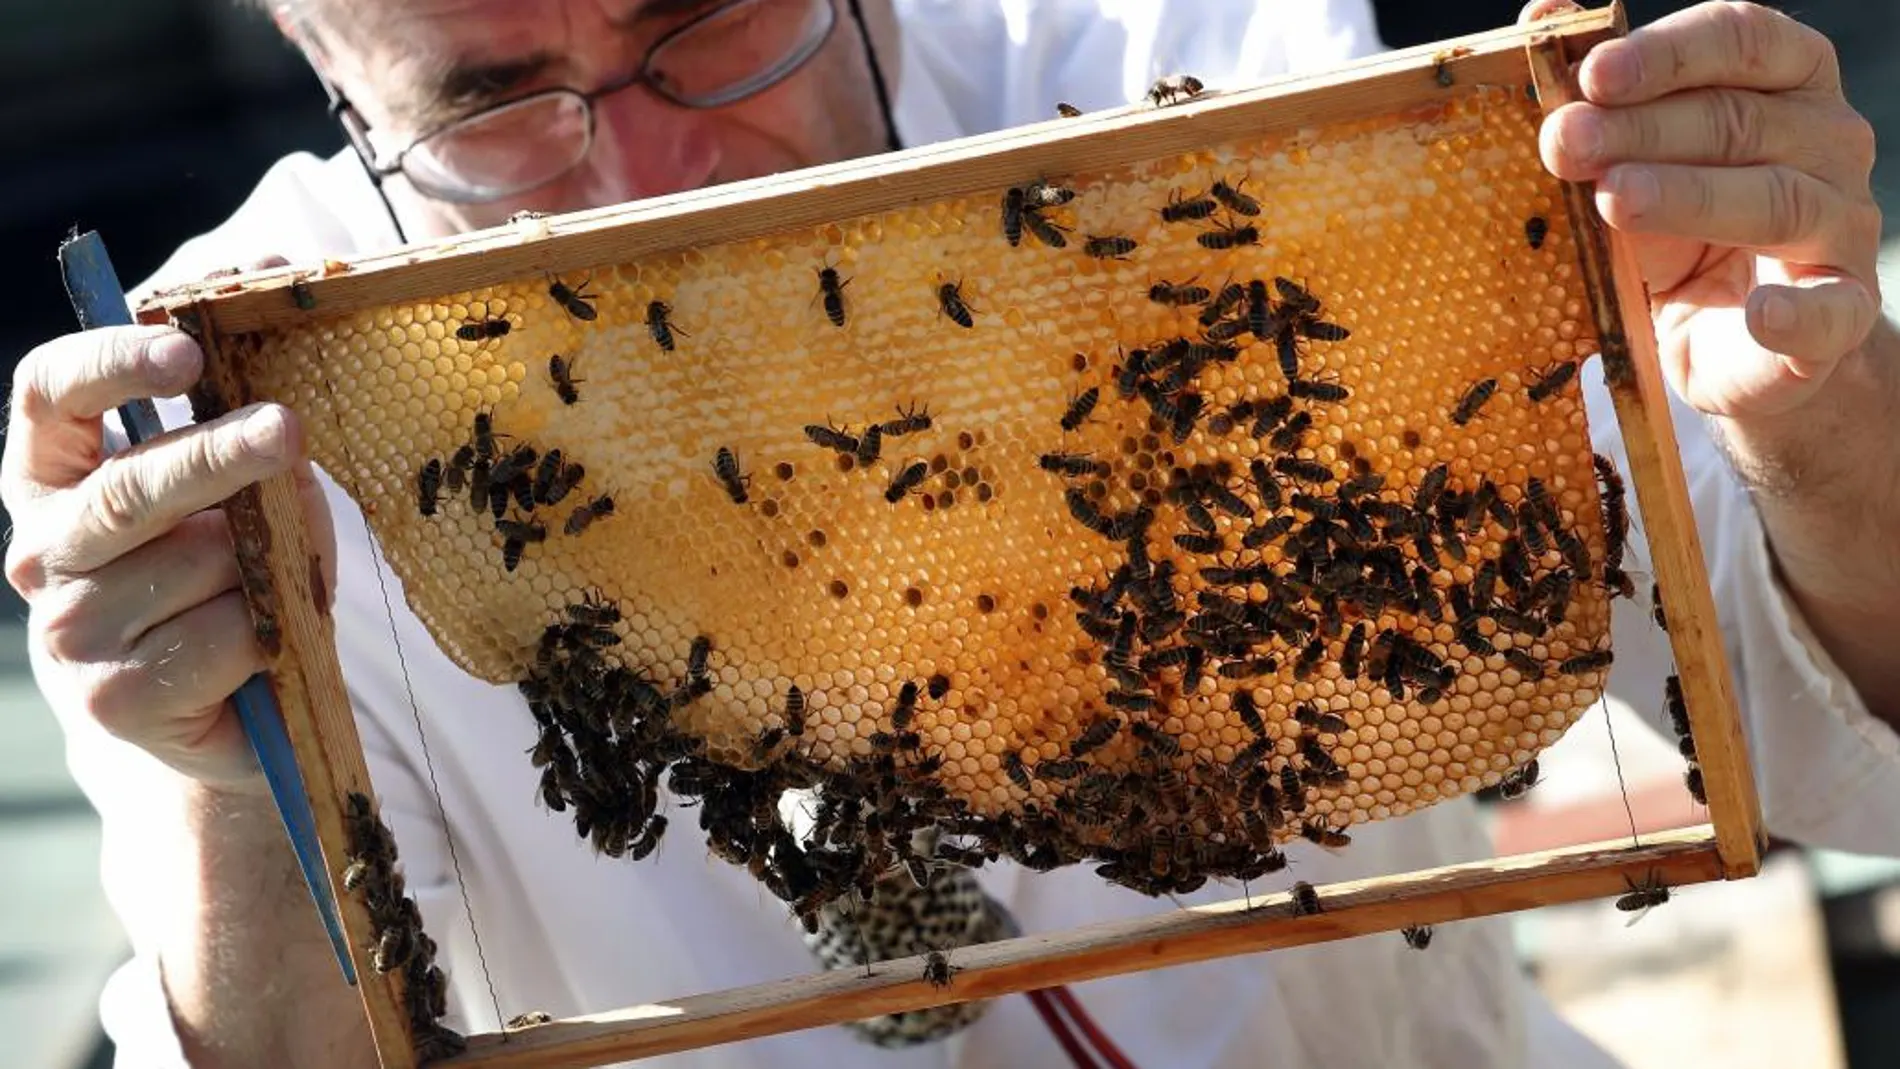 Un apicultor observa unas abejas en una imagen tomada en Berlín